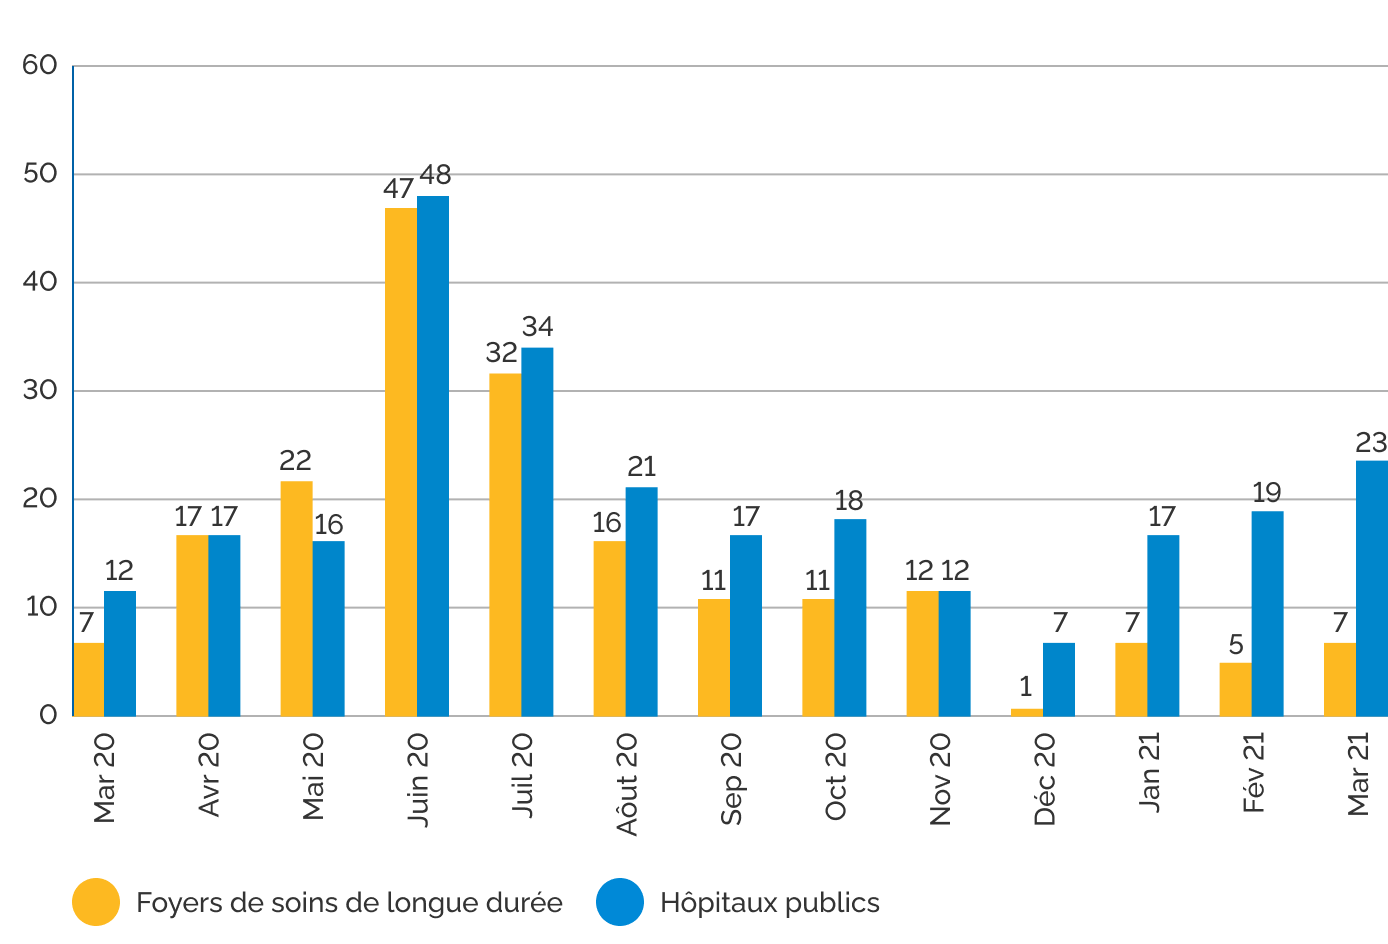 Diagramme en barres illustrant le nombre de plaintes mensuel concernant les foyers de soins de longue durée et les hôpitaux publics de mars 2020 à mars 2021. Le nombre de plaintes a atteint son maximum en mai et en juin 2020.